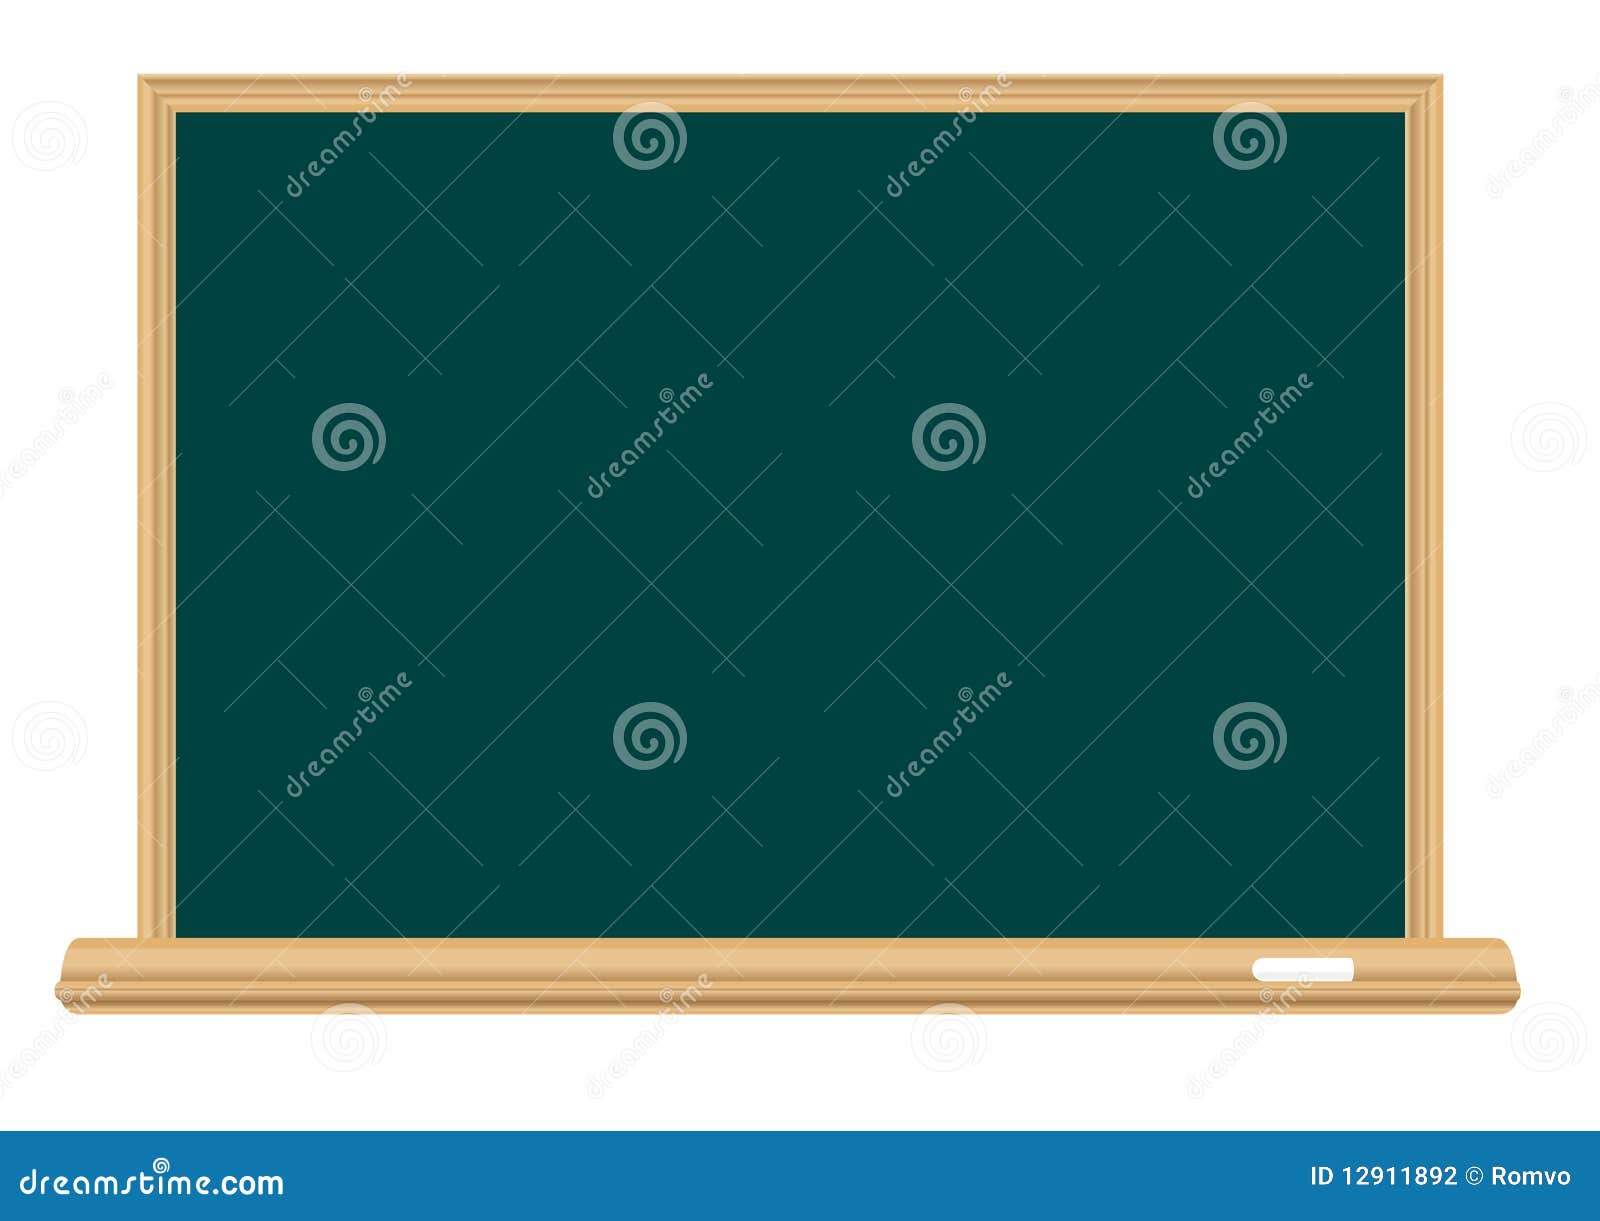 School Blackboard Stock Photography - Image: 12911892